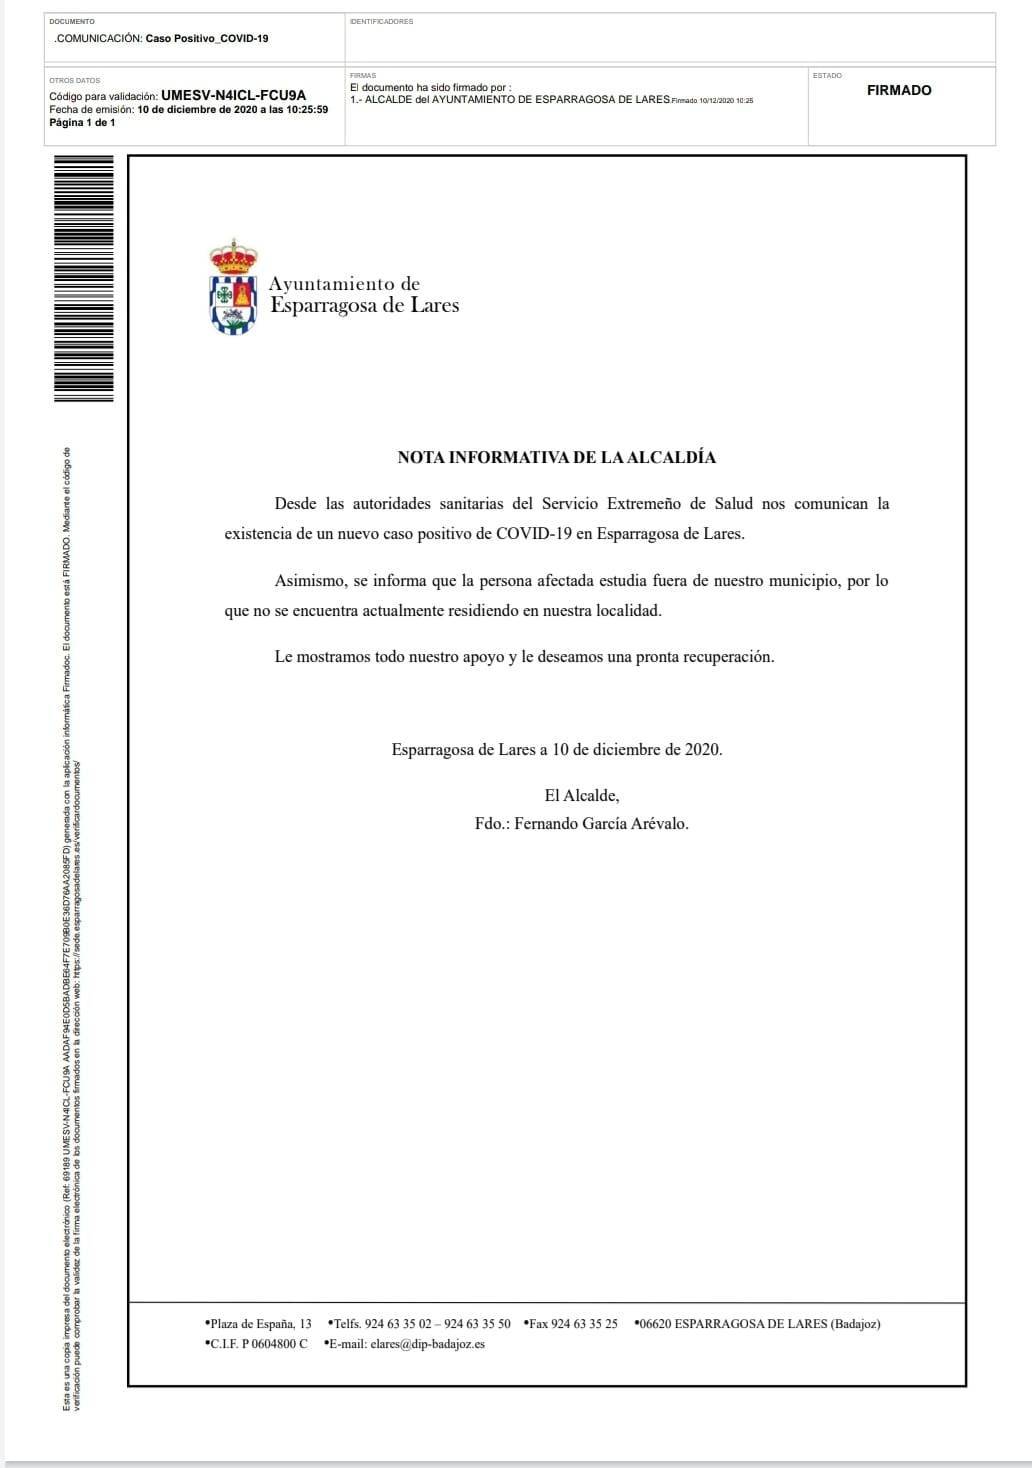 Nuevo caso positivo de COVID-19 (diciembre 2020) - Esparragosa de Lares (Badajoz)